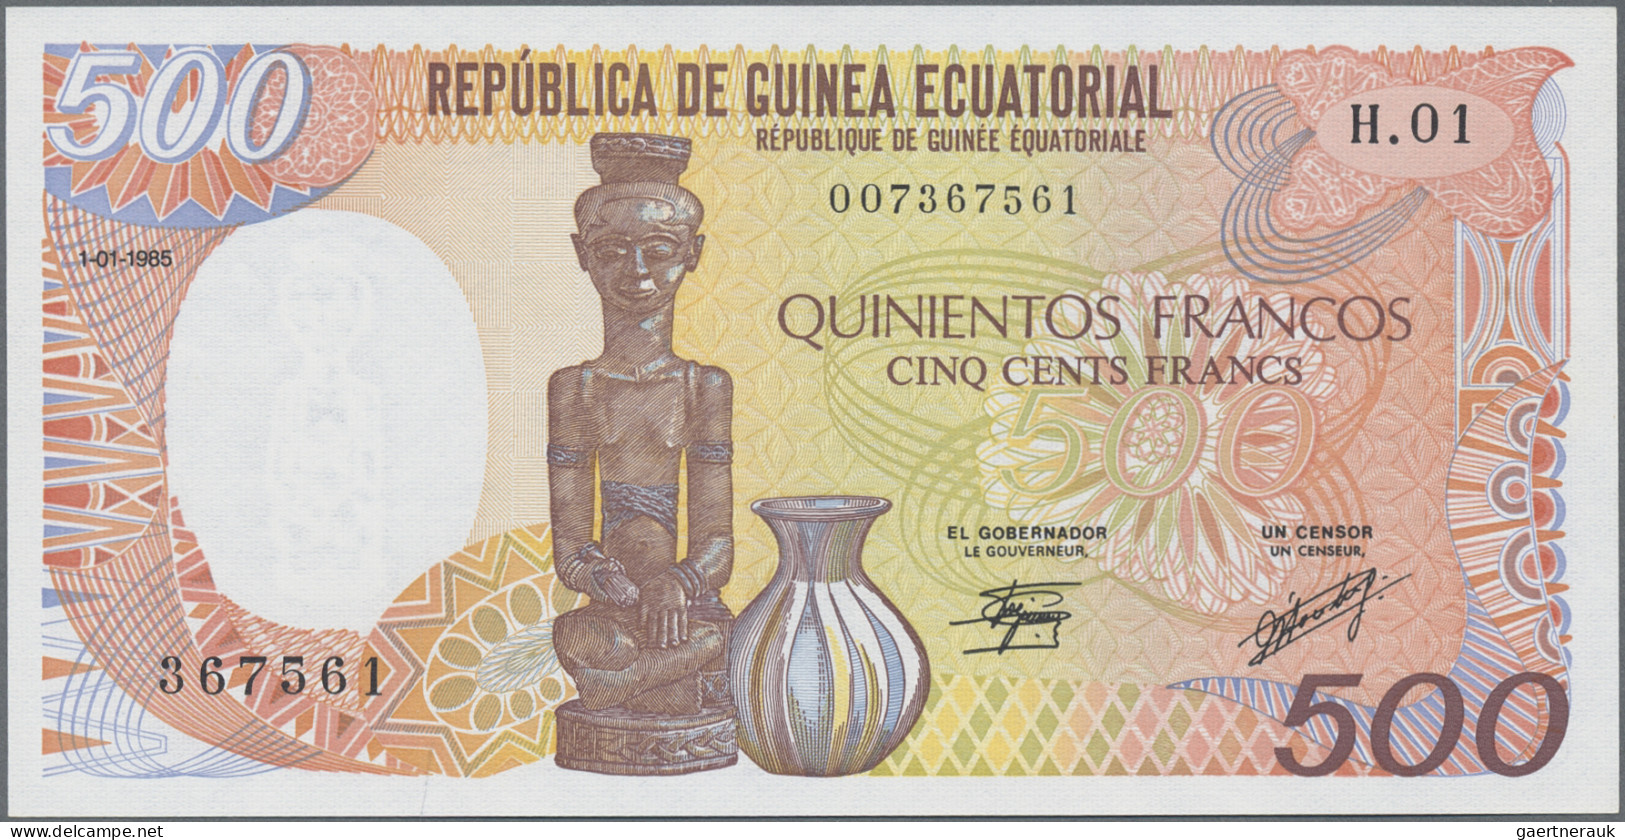 Equatorial Guinea: Banque Des États De L'Afrique Centrale - República De Guinea - Equatorial Guinea